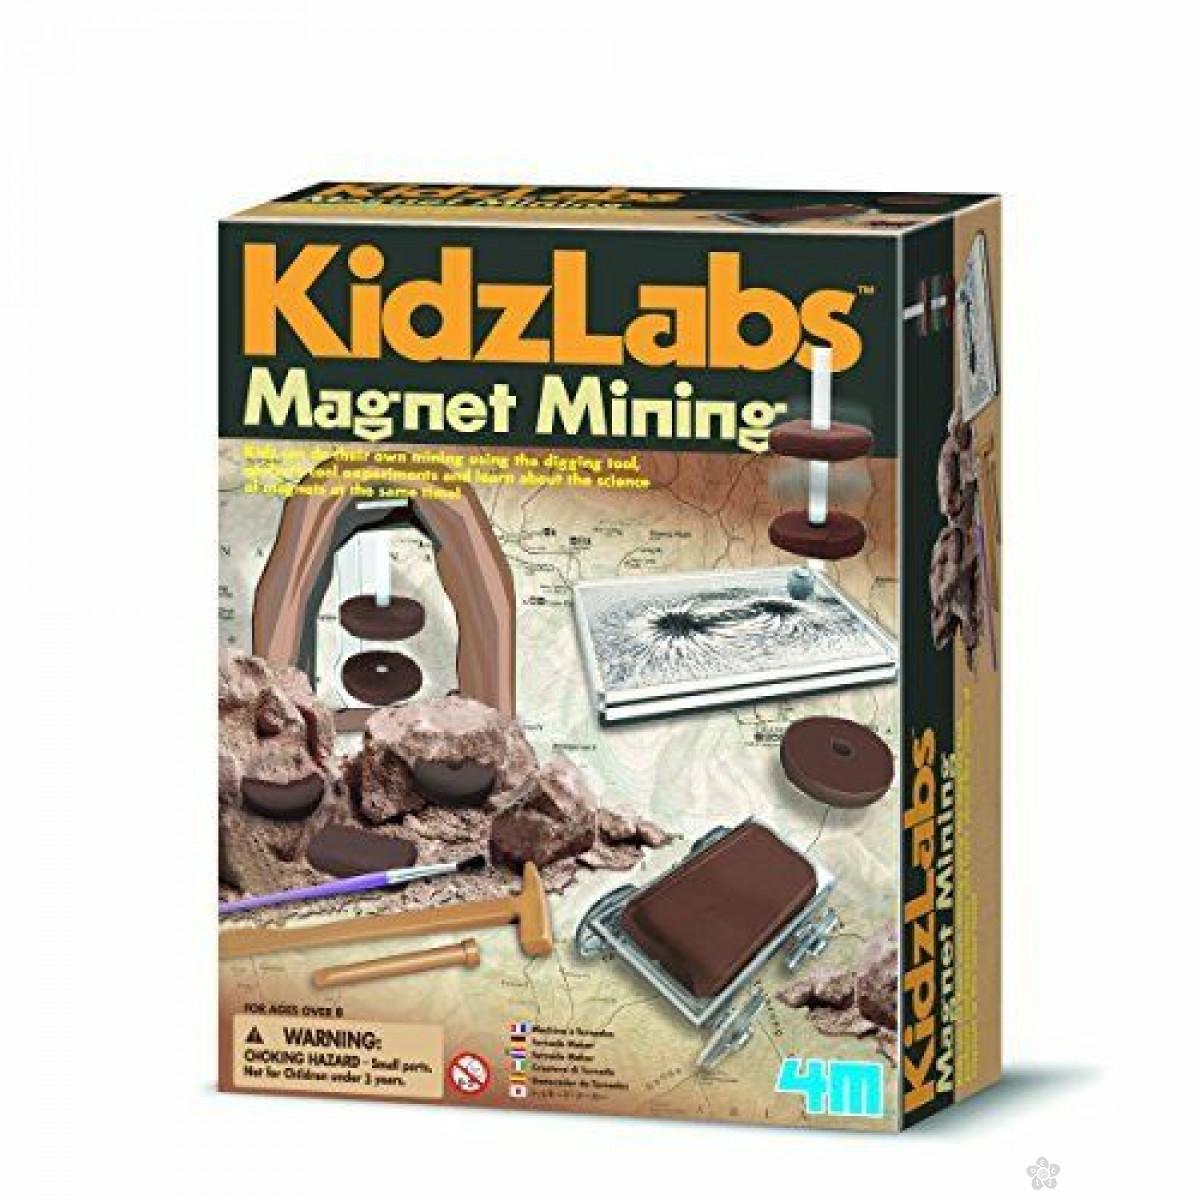 Kidz Labs - Magnet Mining 4M03396 